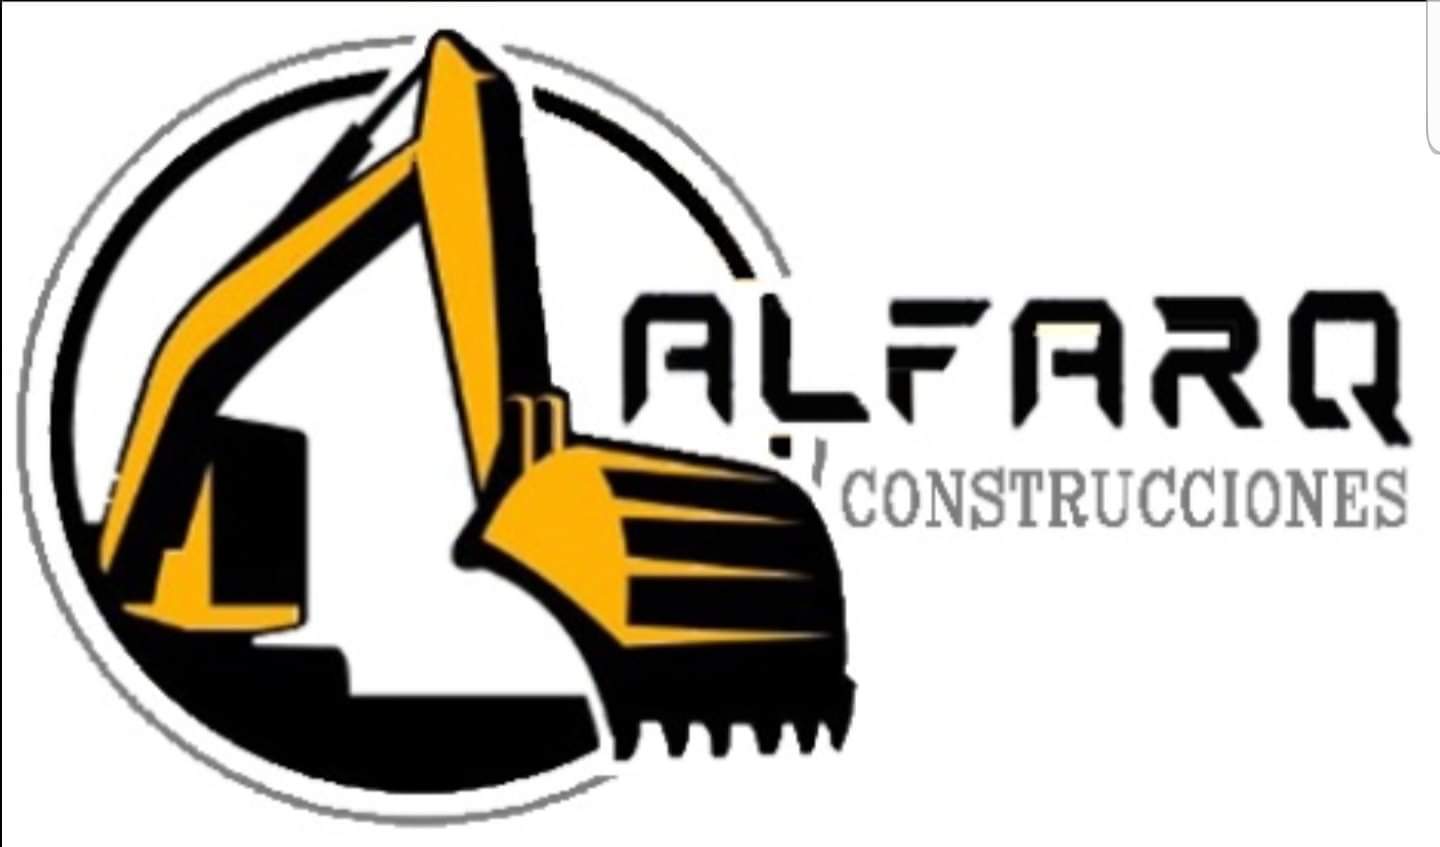 Alfarq Construcciones